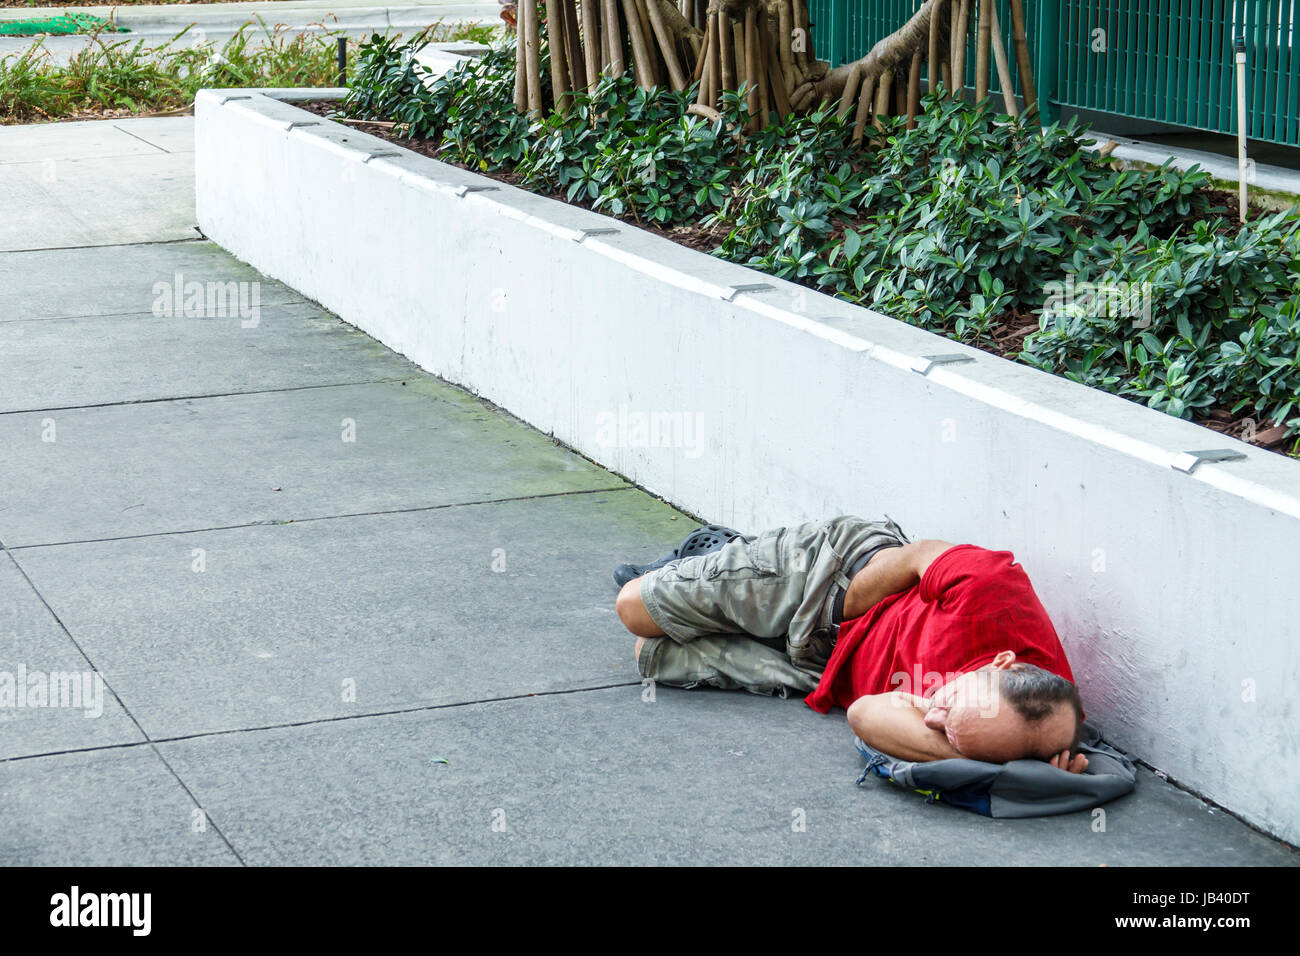 Miami Beach Florida, Bürgersteig, Männer männlich, obdachlos, schlafen auf dem Boden, Bürgersteig, FL170401070 Stockfoto